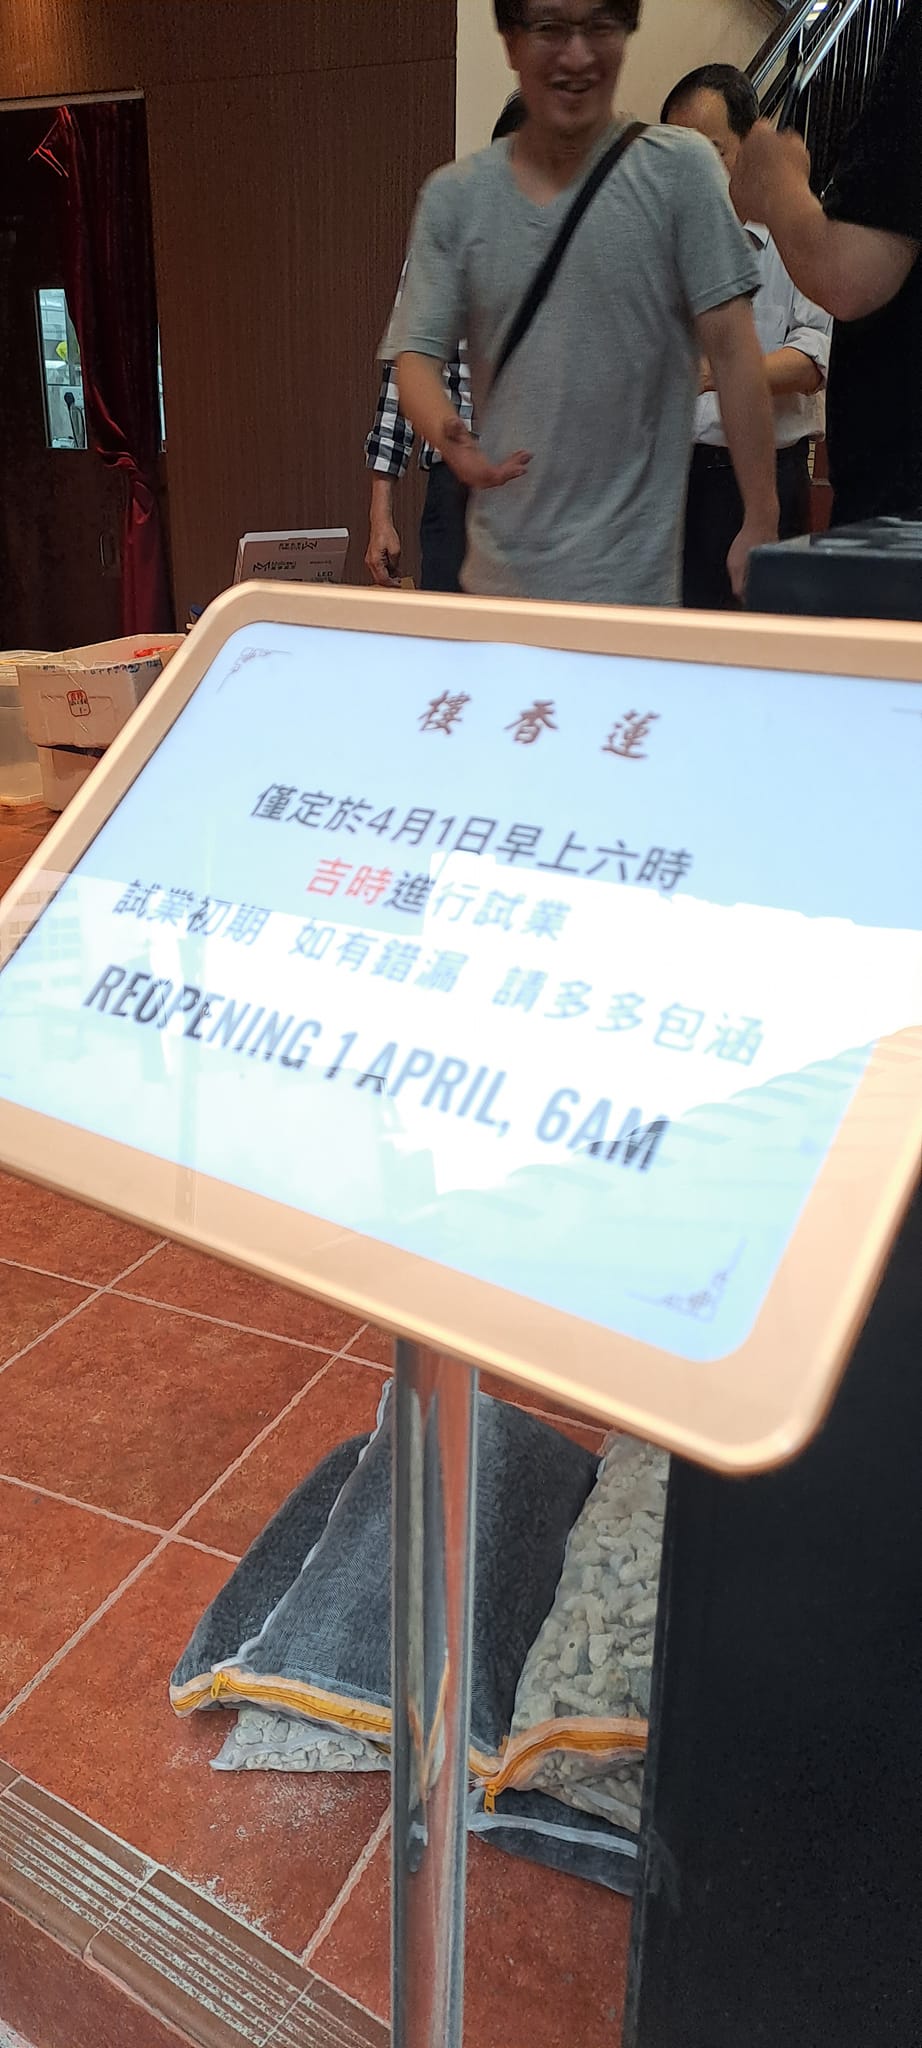 蓮香樓亦擺出公告表示「謹定於4月1日早上六時吉時進行試業。試業初期，如有錯漏，請多多包函」。(圖片來源:香港茶餐廳及美食關注組)